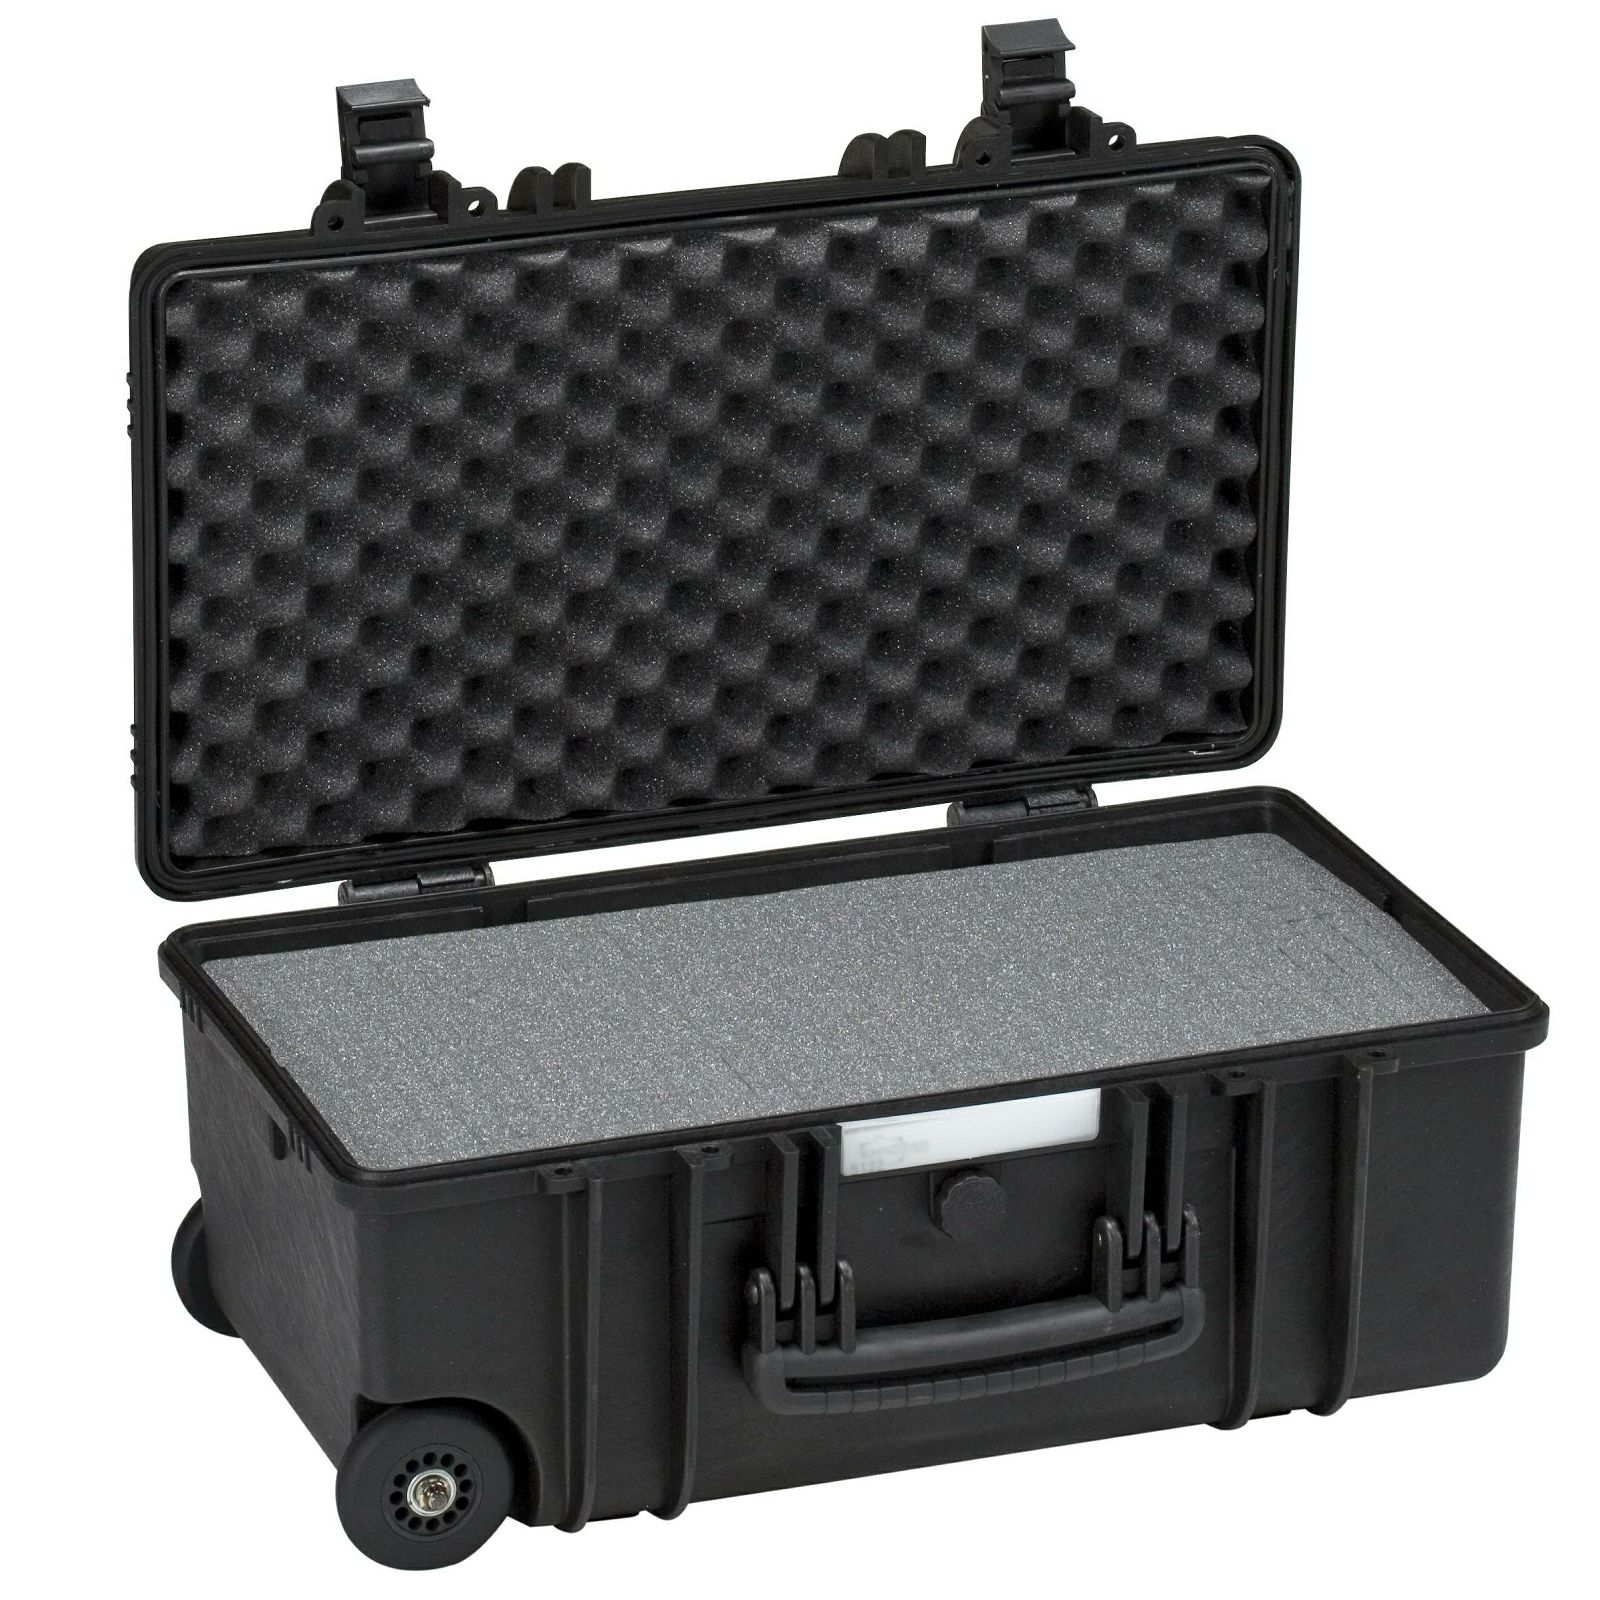 Explorer Cases 5122 Black Foam 546x347x247mm kufer za foto opremu kofer Camera Case